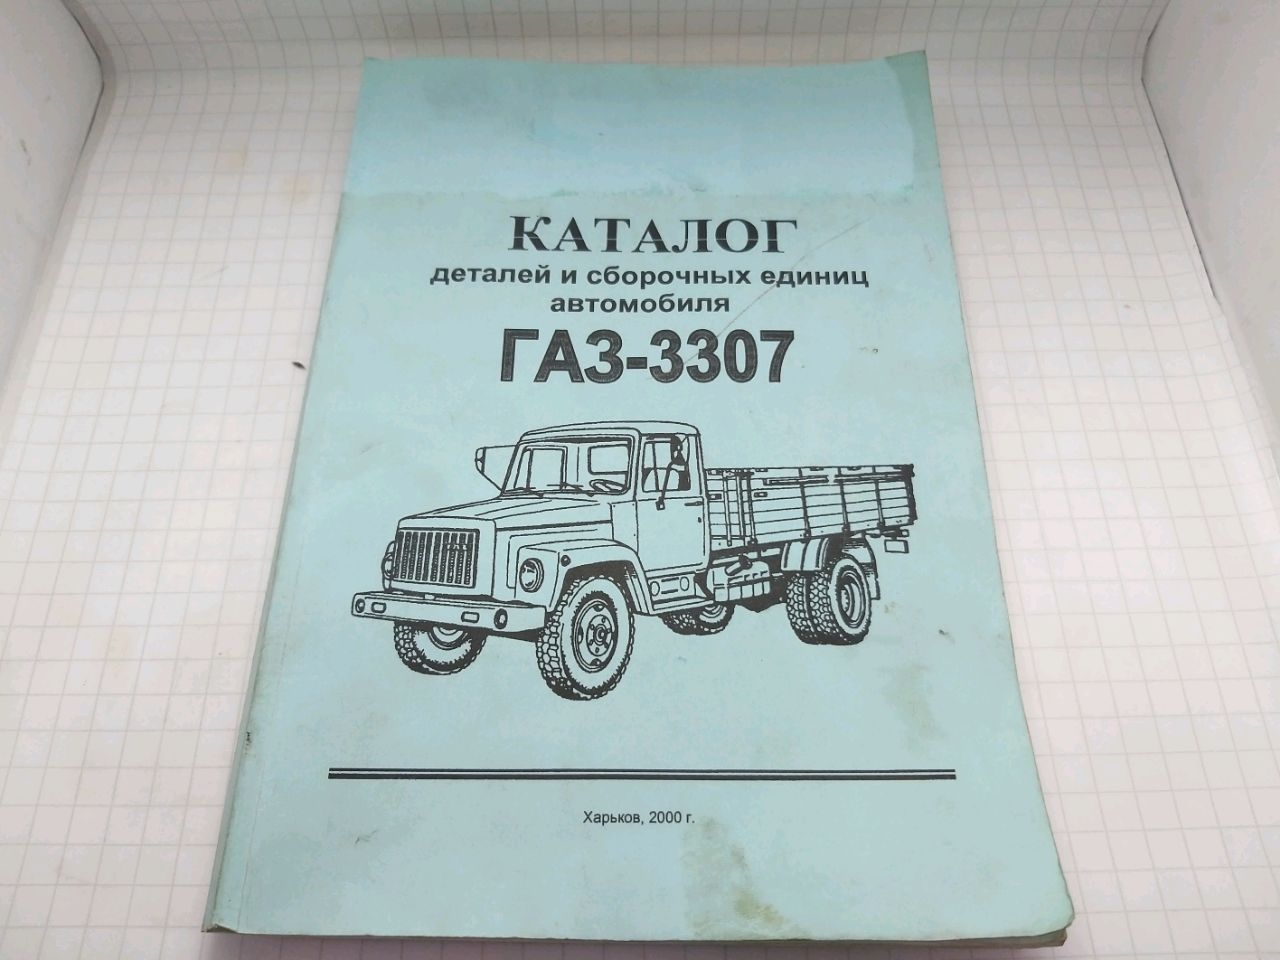 Catalog GAZ-3307